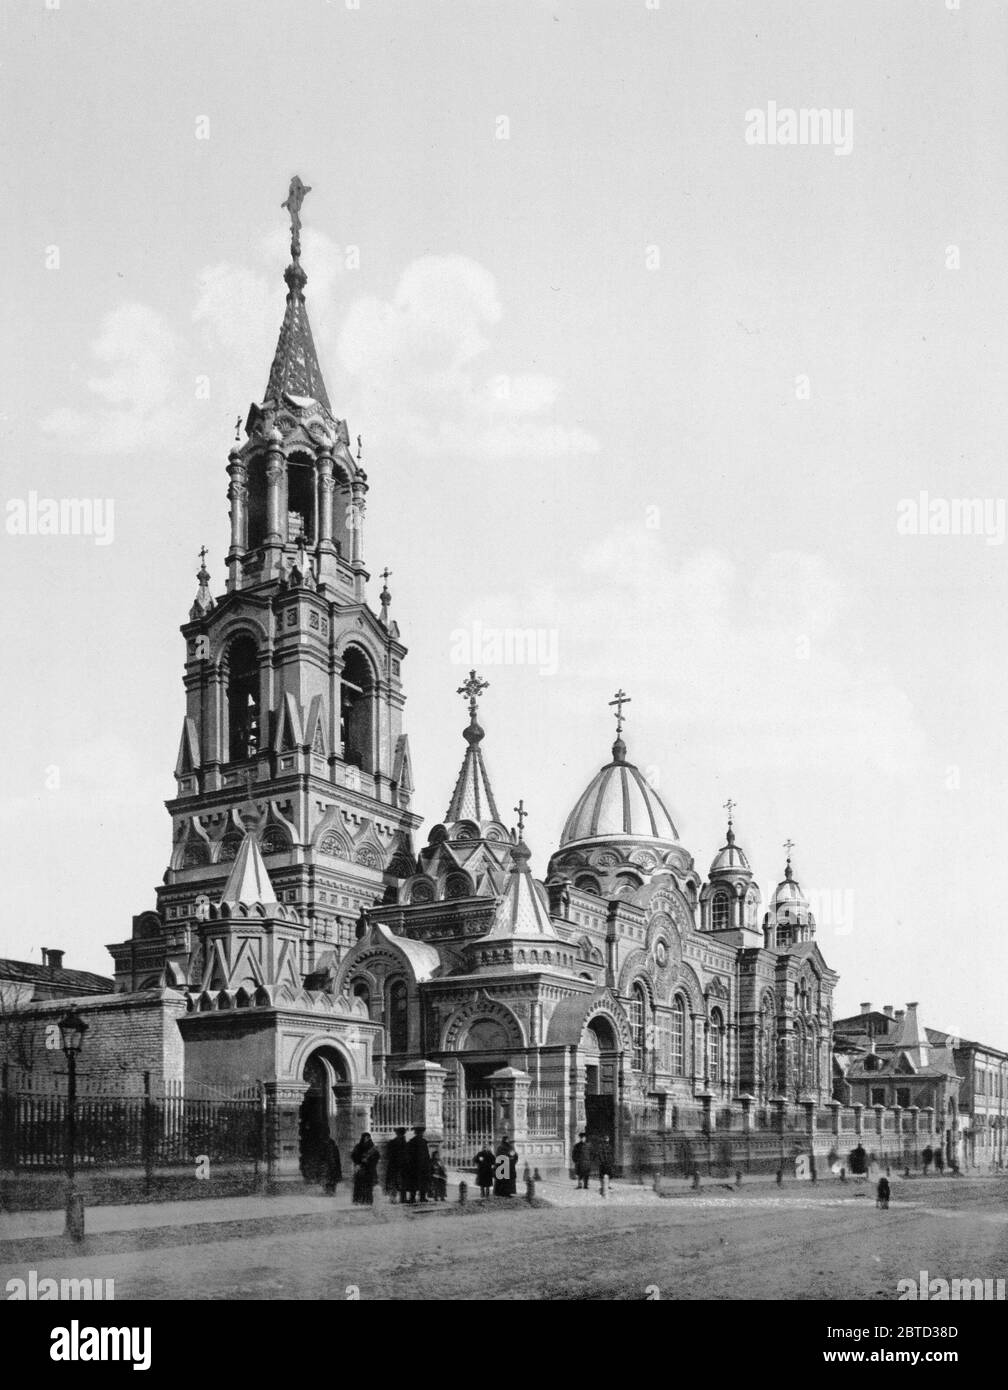 Demitry St., 61145 Kharkov, Russie, (c.-à-d., Kharkiv, Ukraine) ca. 1890-1900 Banque D'Images